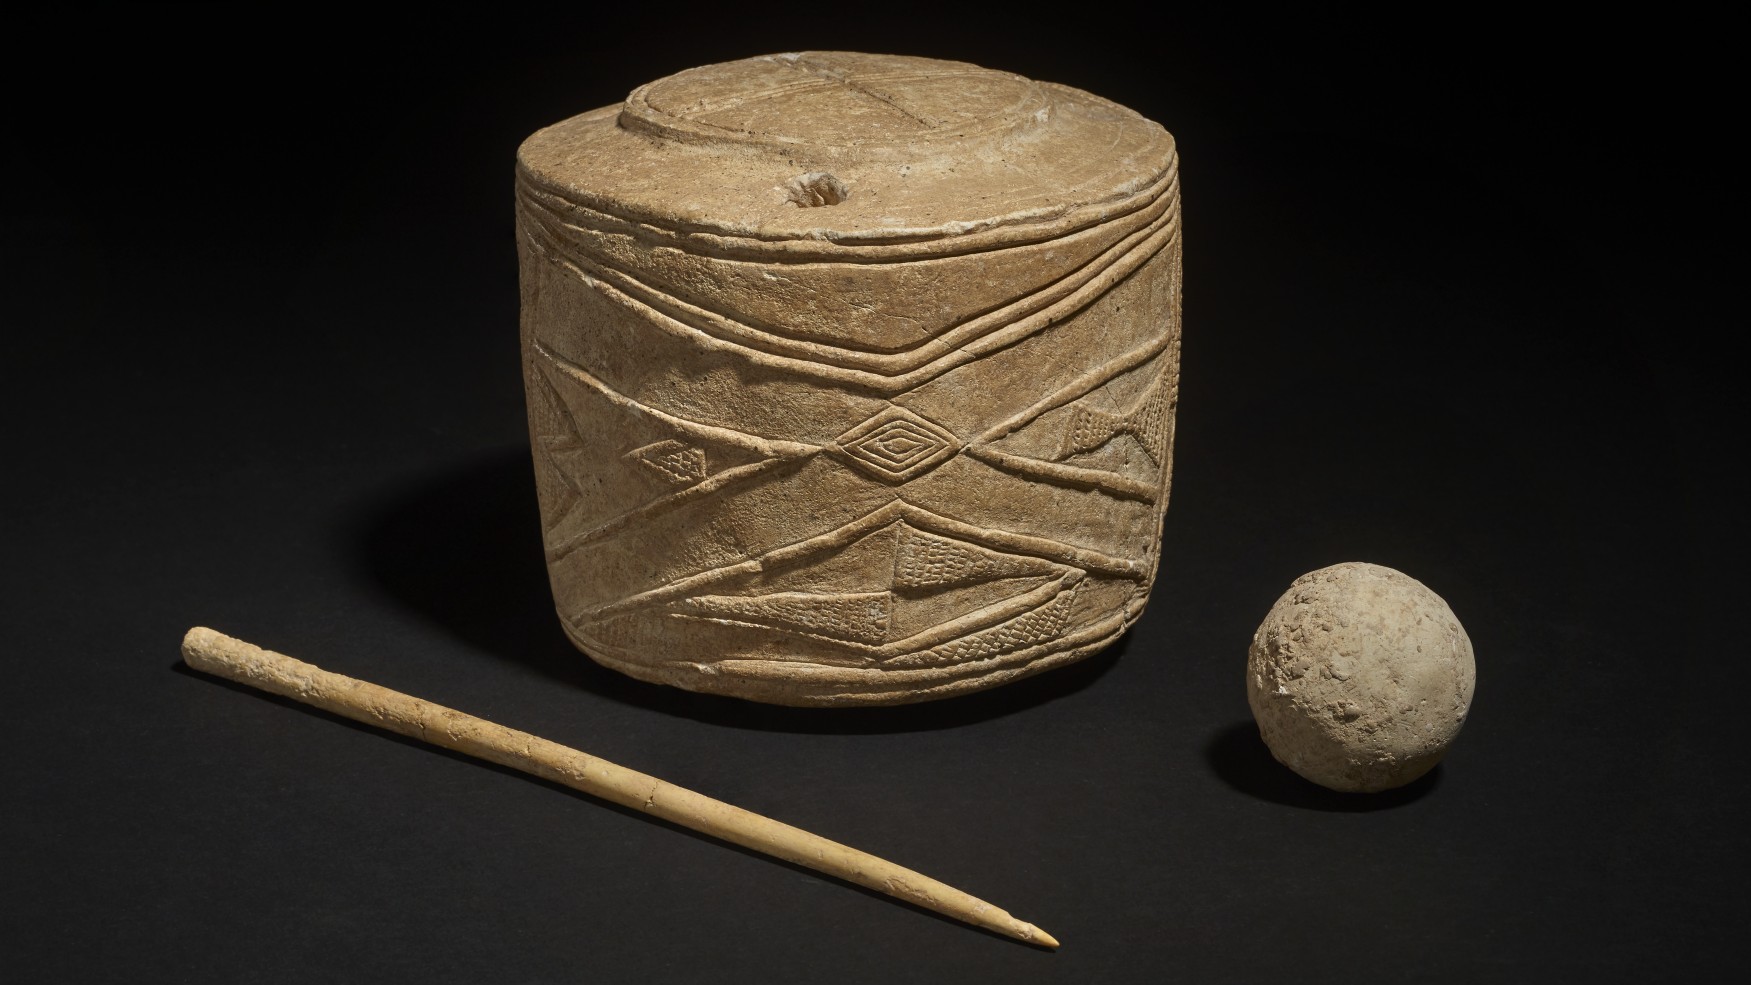 बच्चे के दफन के साथ चाक की मूर्ति, हड्डी की पिन और गेंद मिली।  वे लगभग 5,000 साल पहले के हैं।